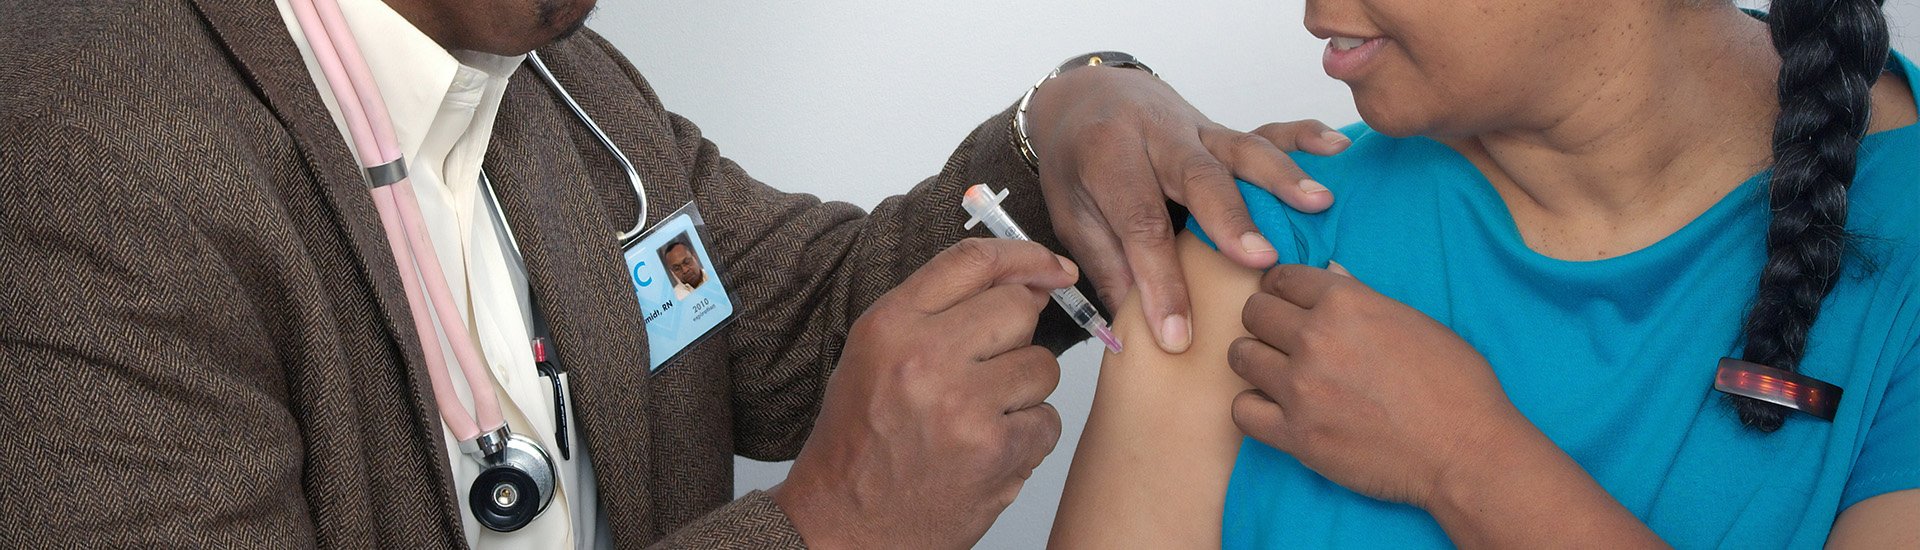 patient-receiving-vaccine-shot